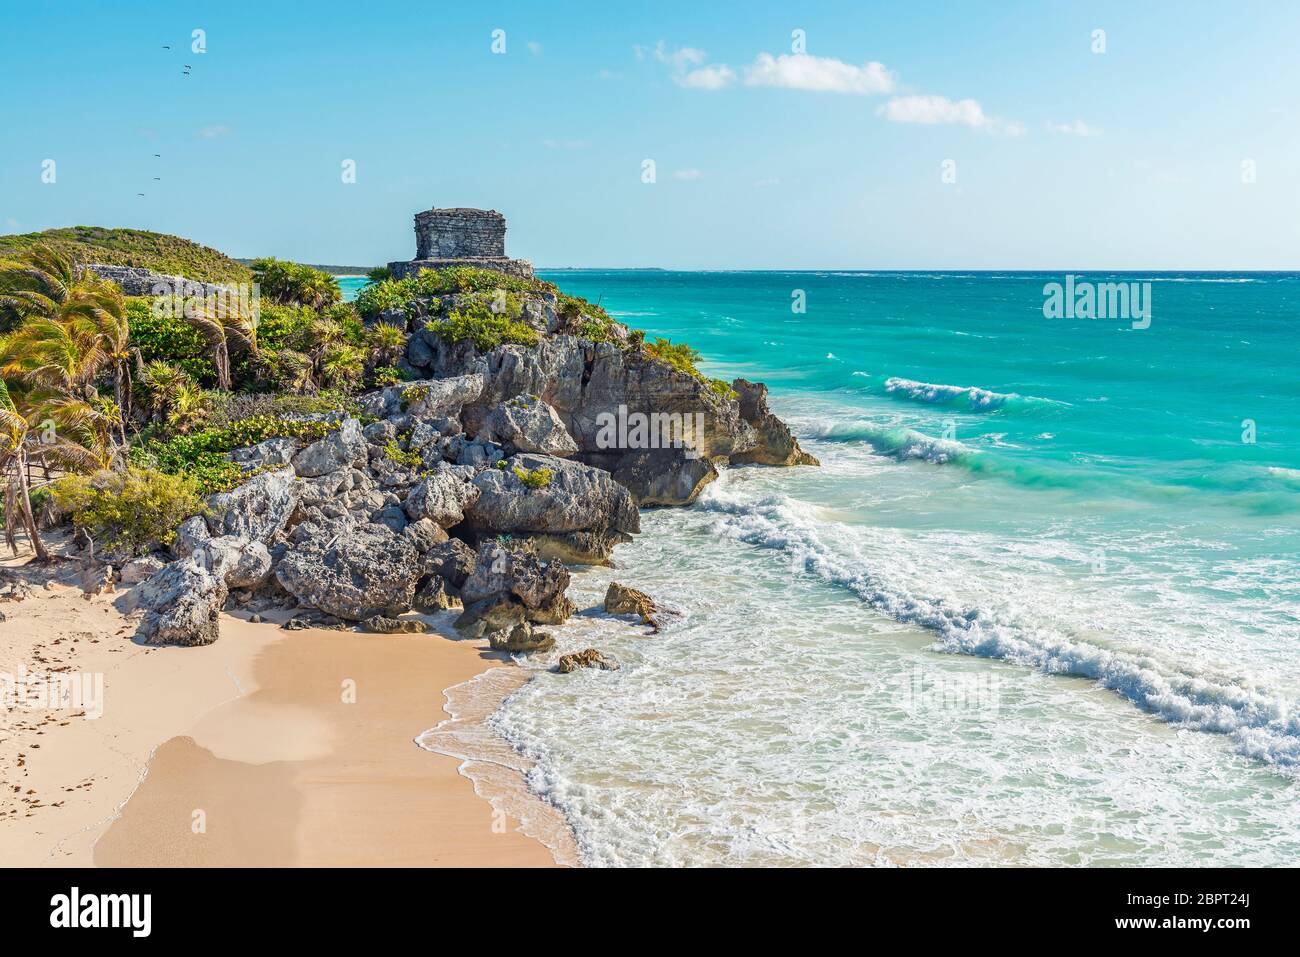 Las ruinas mayas de Tulum y su playa junto al mar Caribe, estado de Quintana Roo, Península de Yucatán, México. Foto de stock